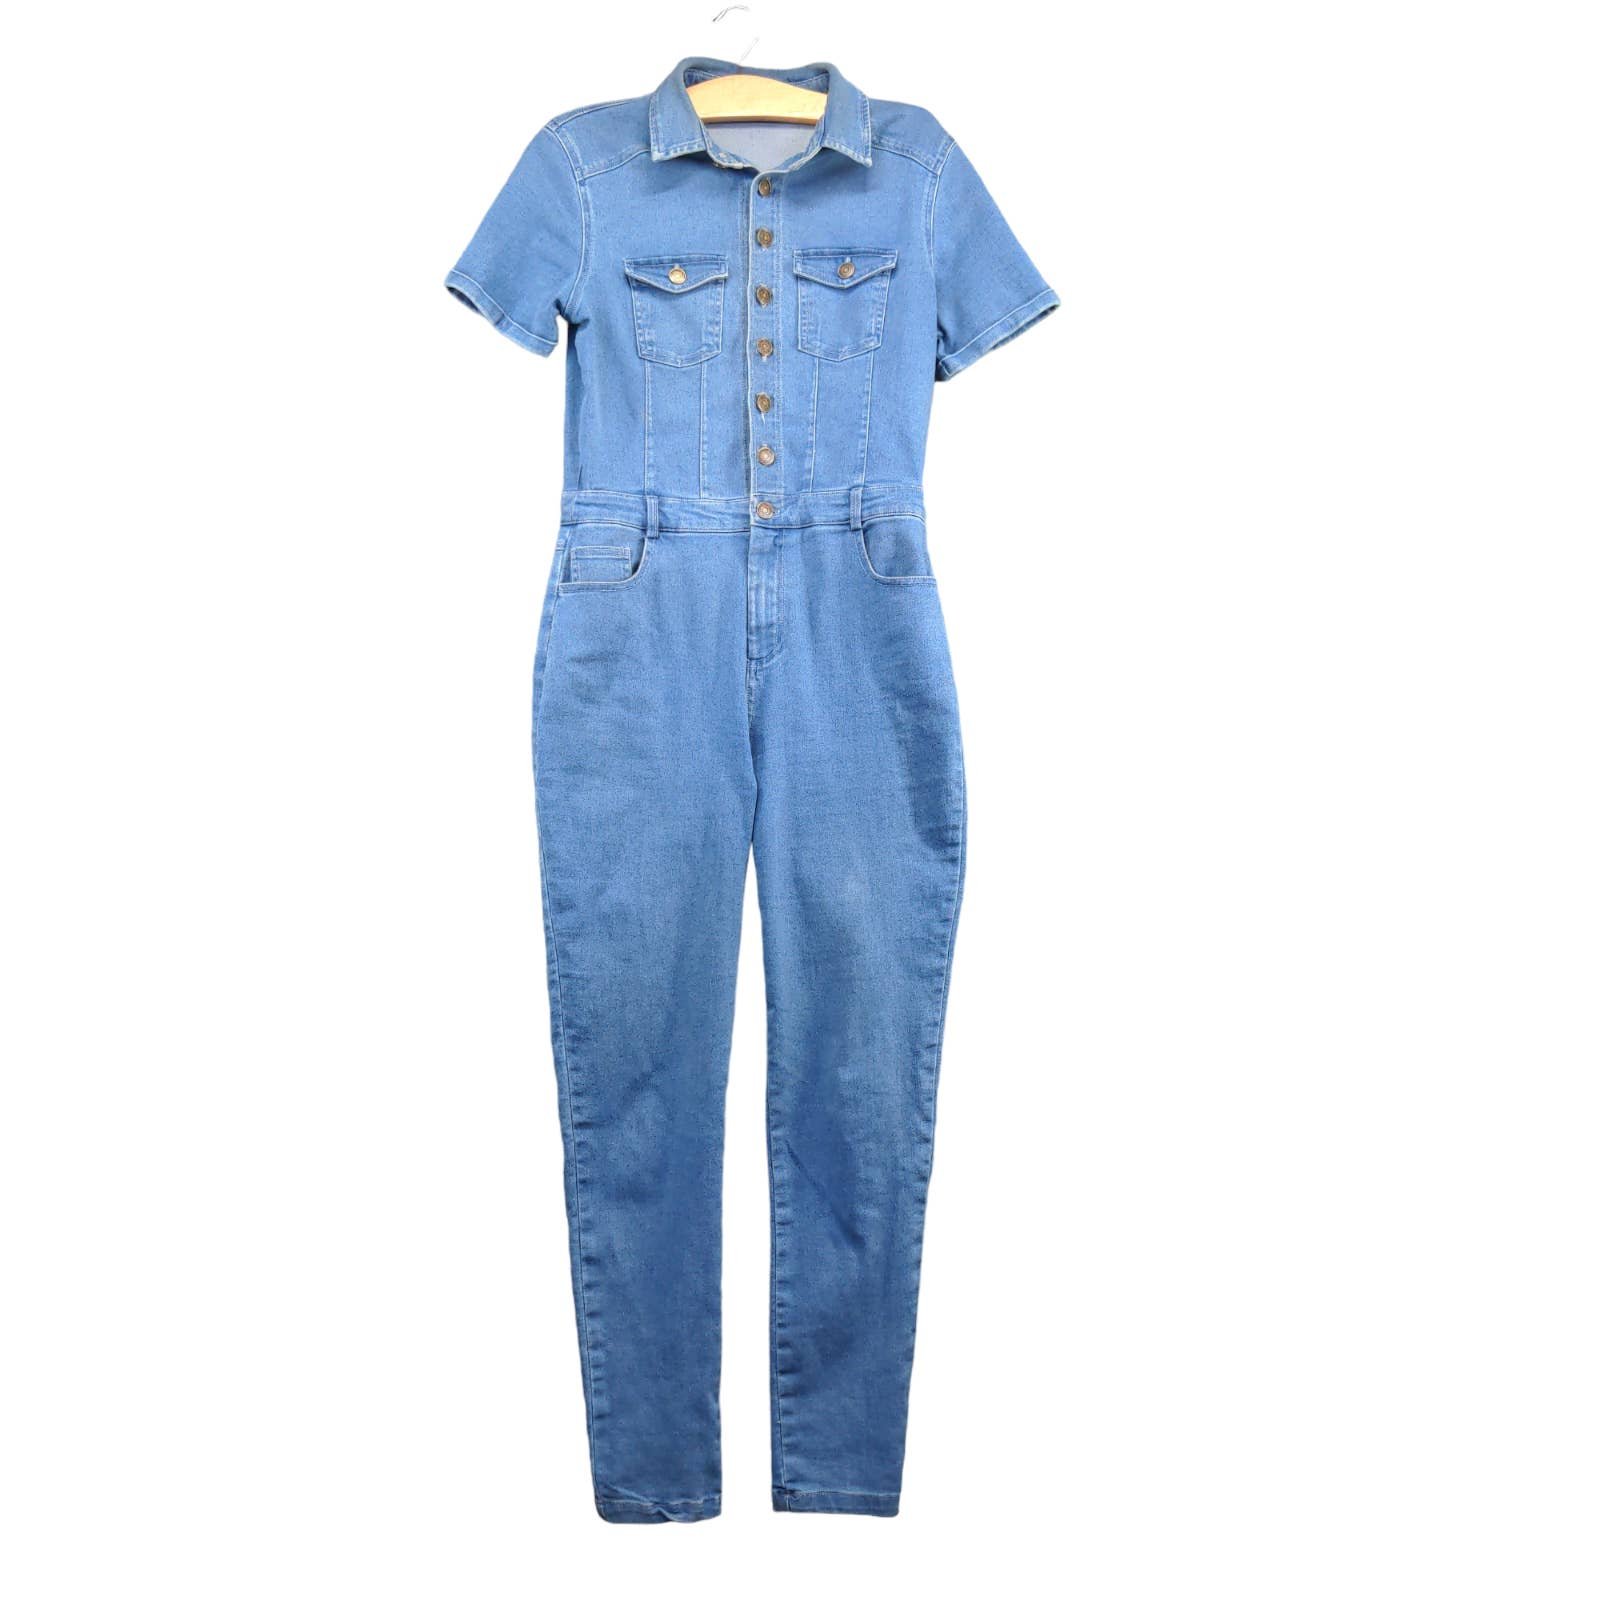 Buy Haute Monde Women´s Button Up Denim Jumpsuit Blue Small Short Sleeve HqonKcJ6b Store Online